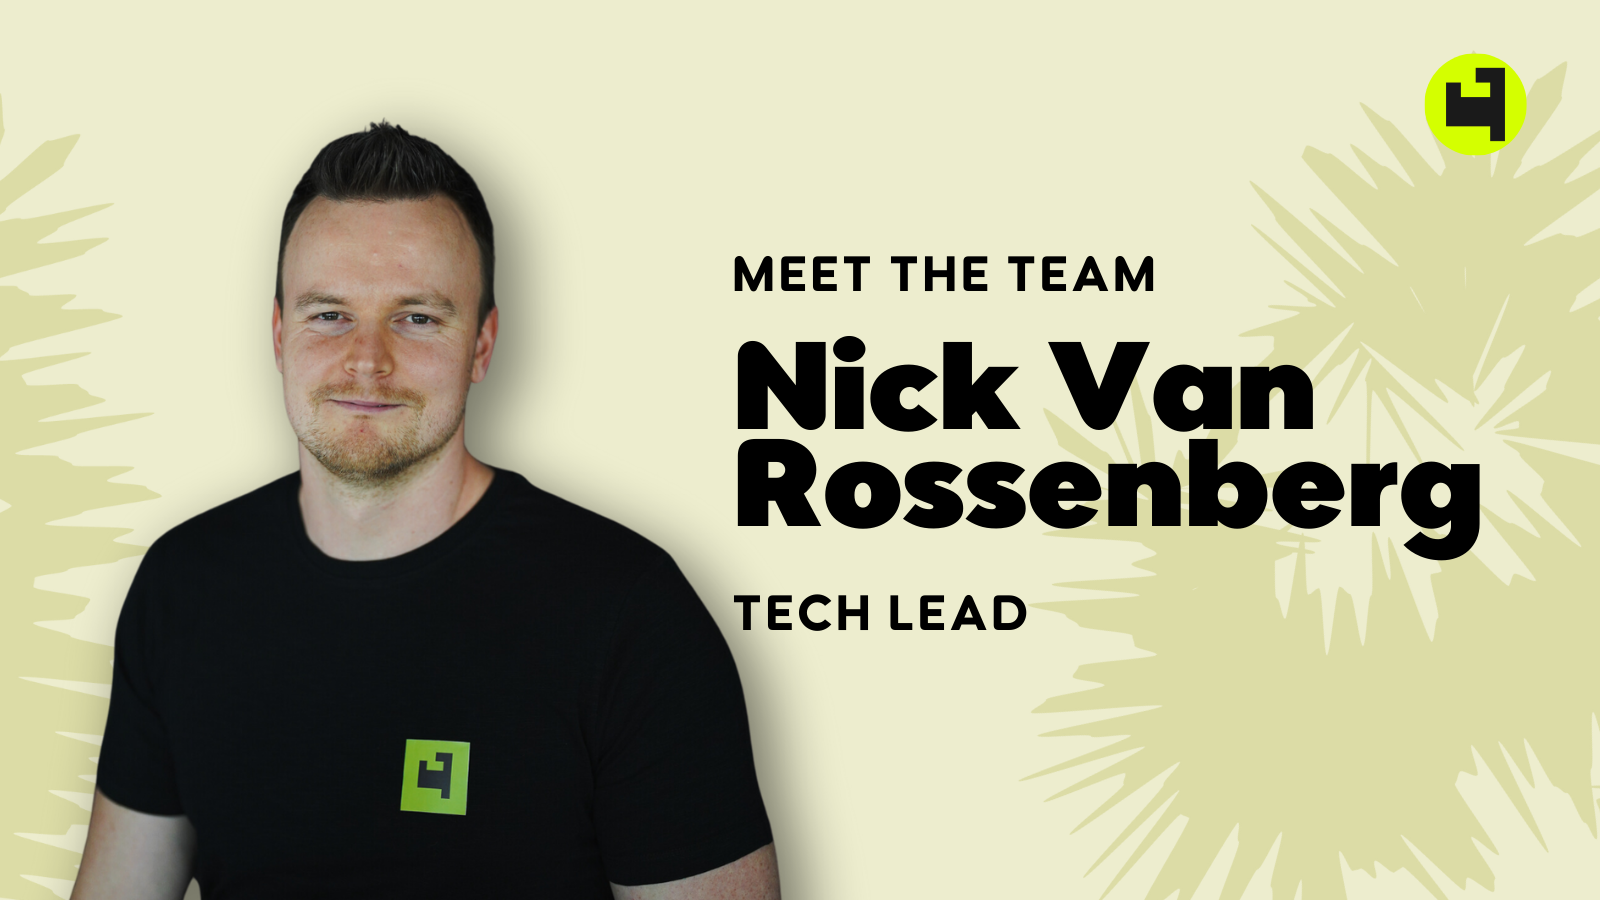 Meet the Team - Tech Lead Nick Van Rossenberg